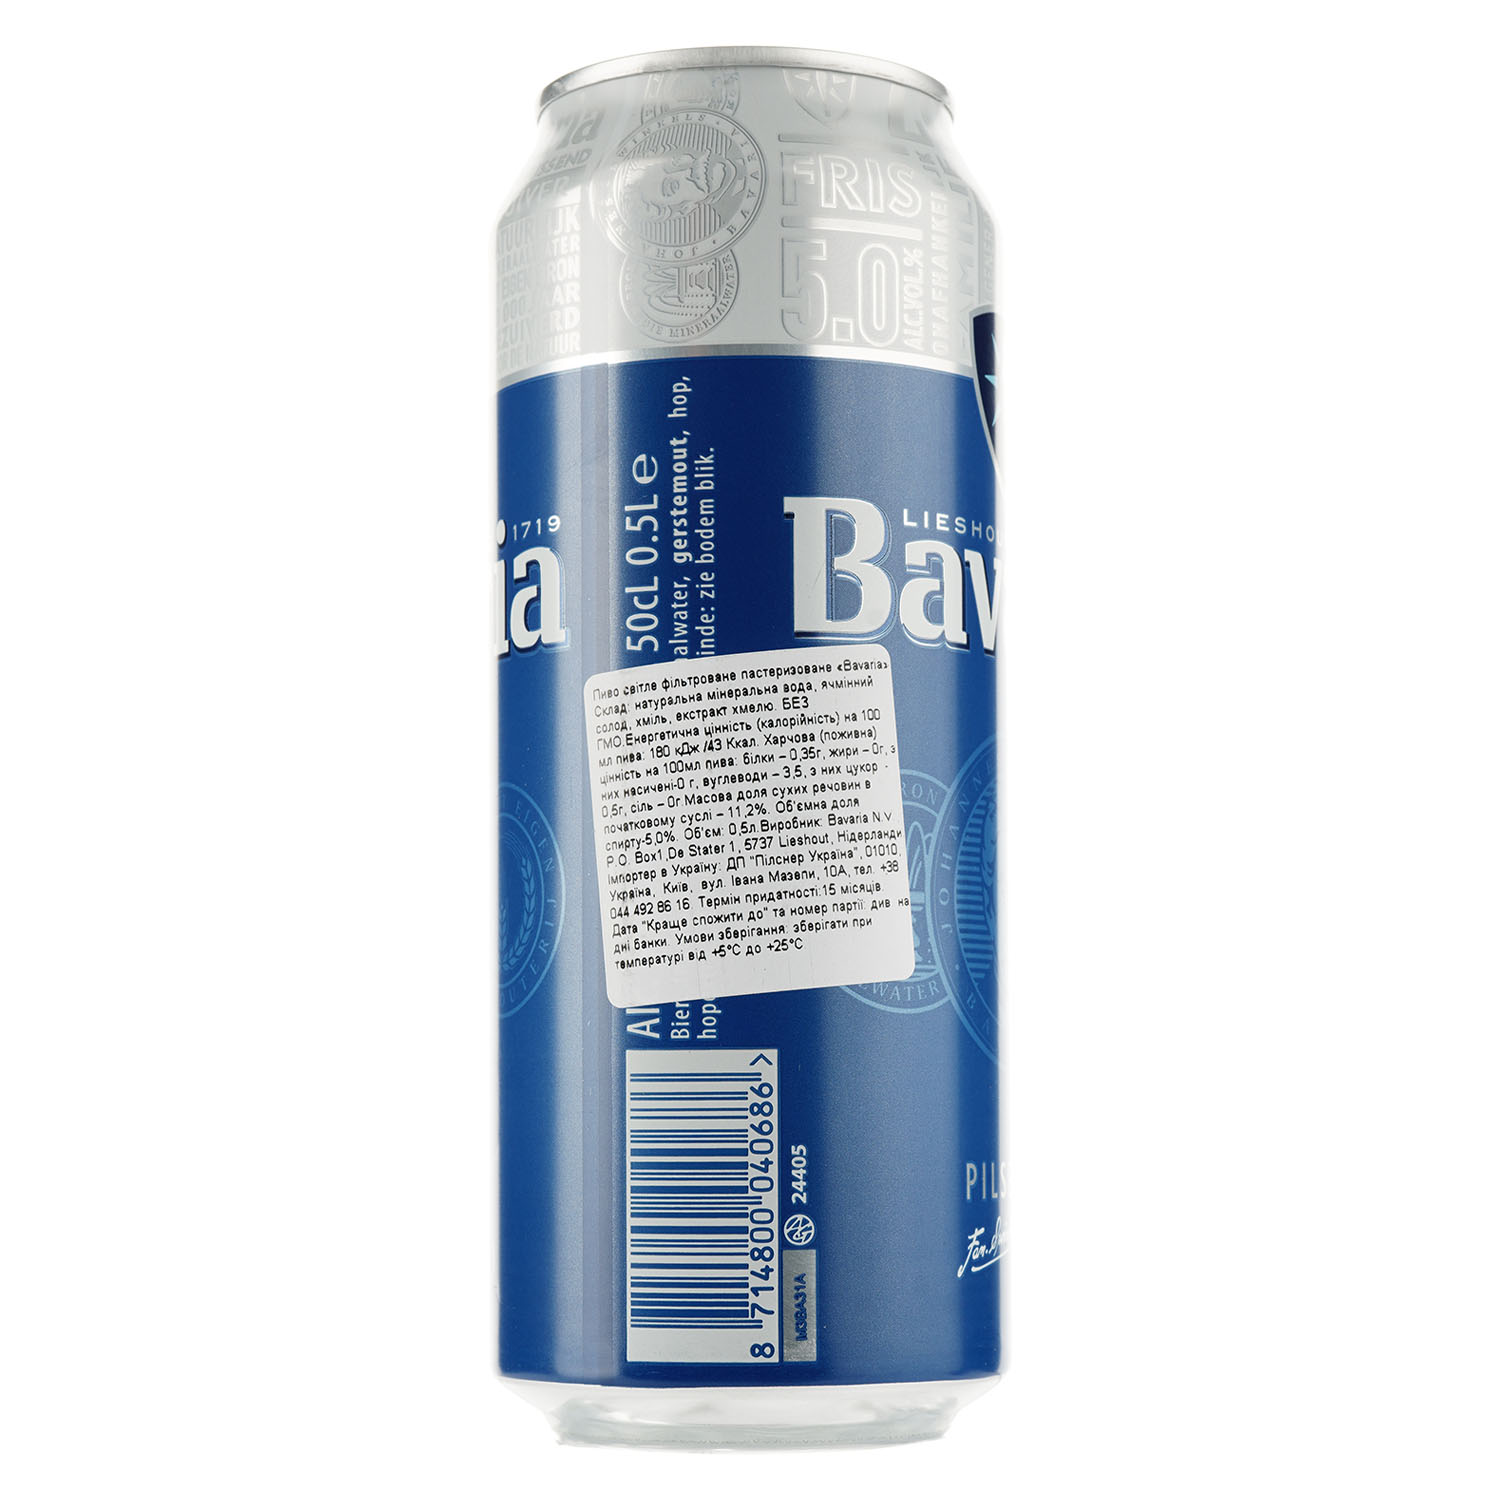 Пиво Bavaria, светлое, фильтрованное, 5%, ж/б, 0,5 л - фото 3